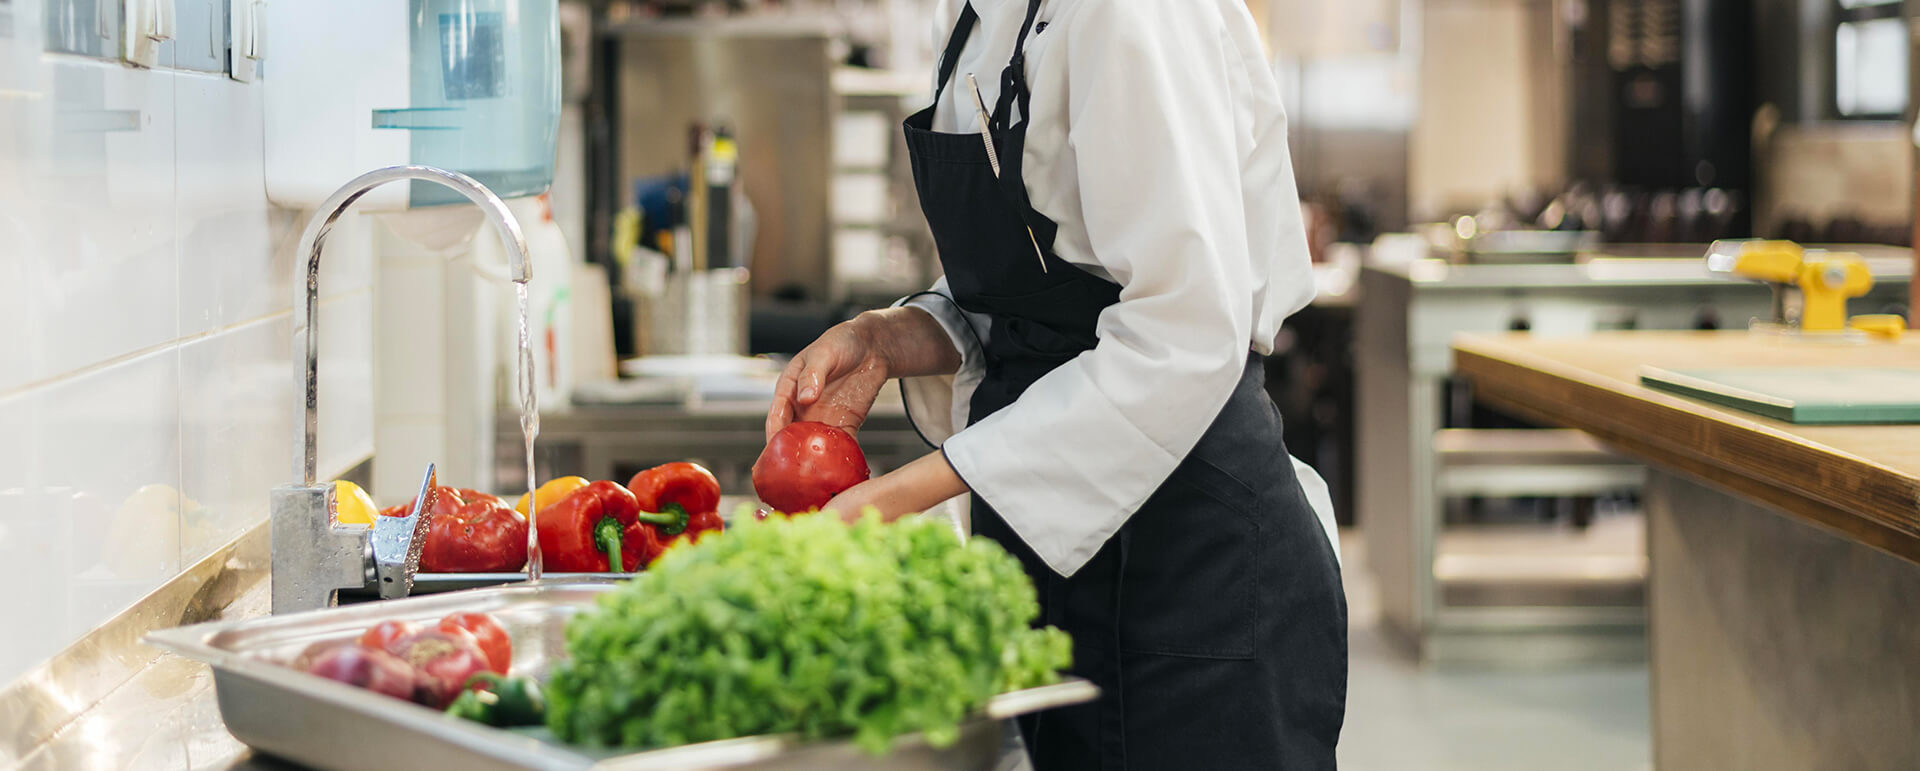 Un cuisinier en uniforme blanc et tablier noir lave des poivrons rouges sous un robinet d'eau dans une cuisine professionnelle. Sur le plan de travail en inox à côté, on voit d'autres poivrons et des légumes verts prêts à être préparés. L'environnement est propre et bien équipé, typique d'une cuisine de restaurant.